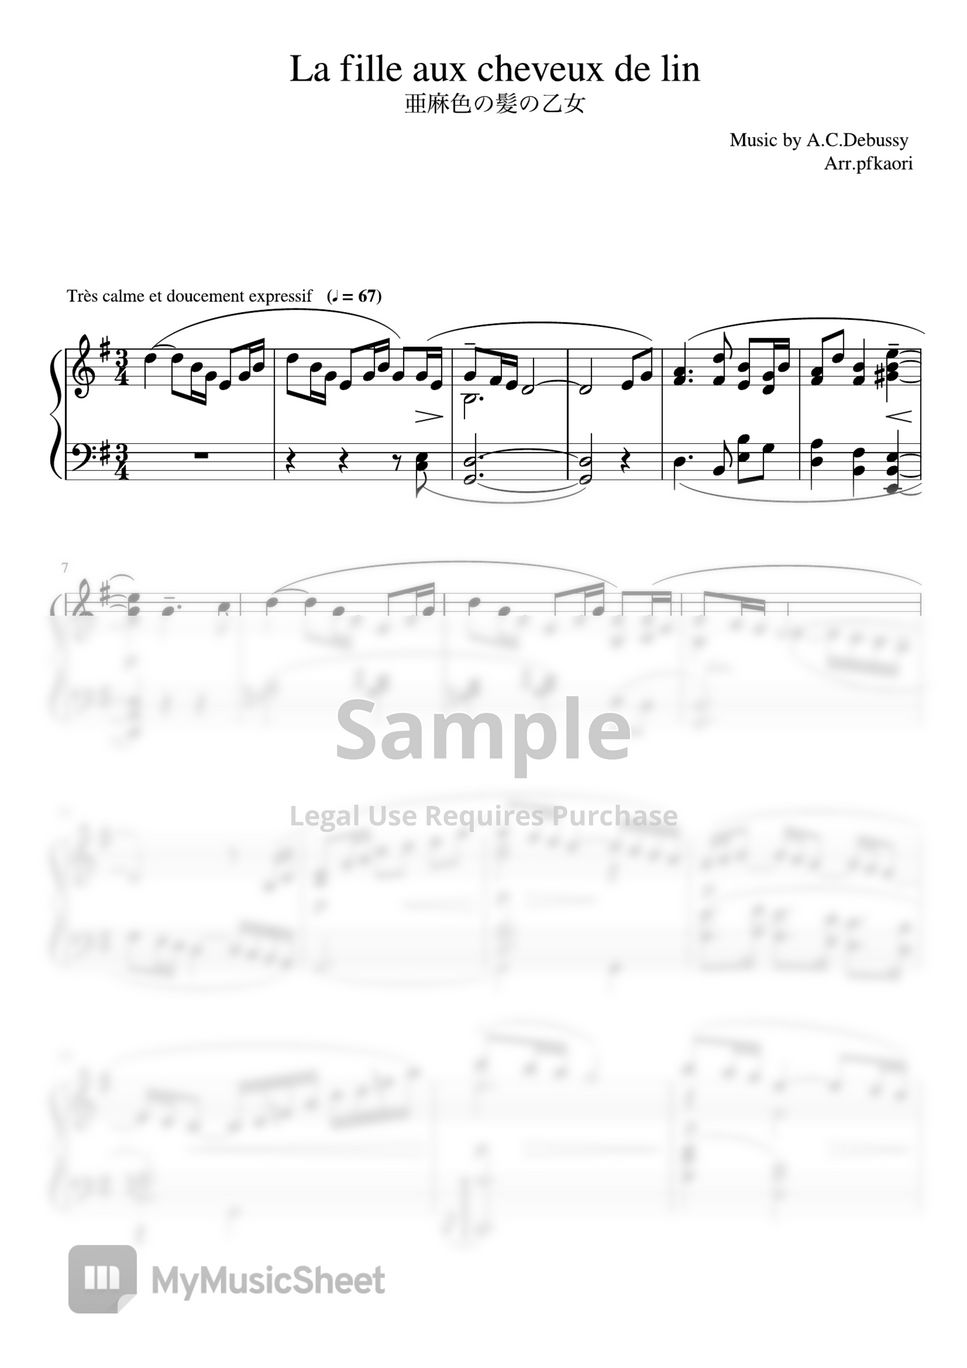 A.C.Debussy - Lafilleauxcheveuxdelin(G) (pianosolo/Intermediate) by pfkaori